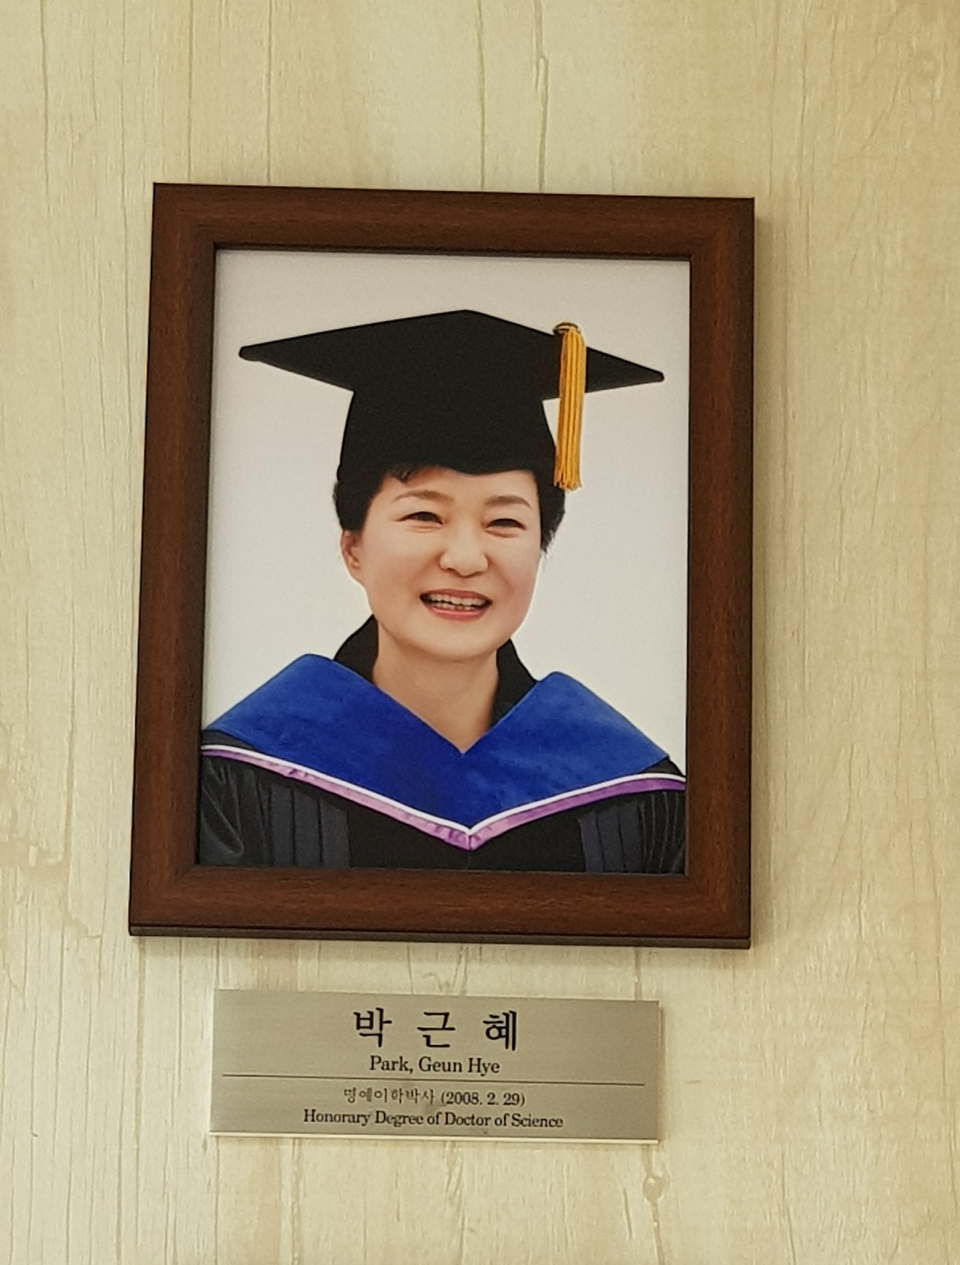 KAIST 본관에 걸려있는 박근혜 전 대통령 명예 이학박사 증명사진.